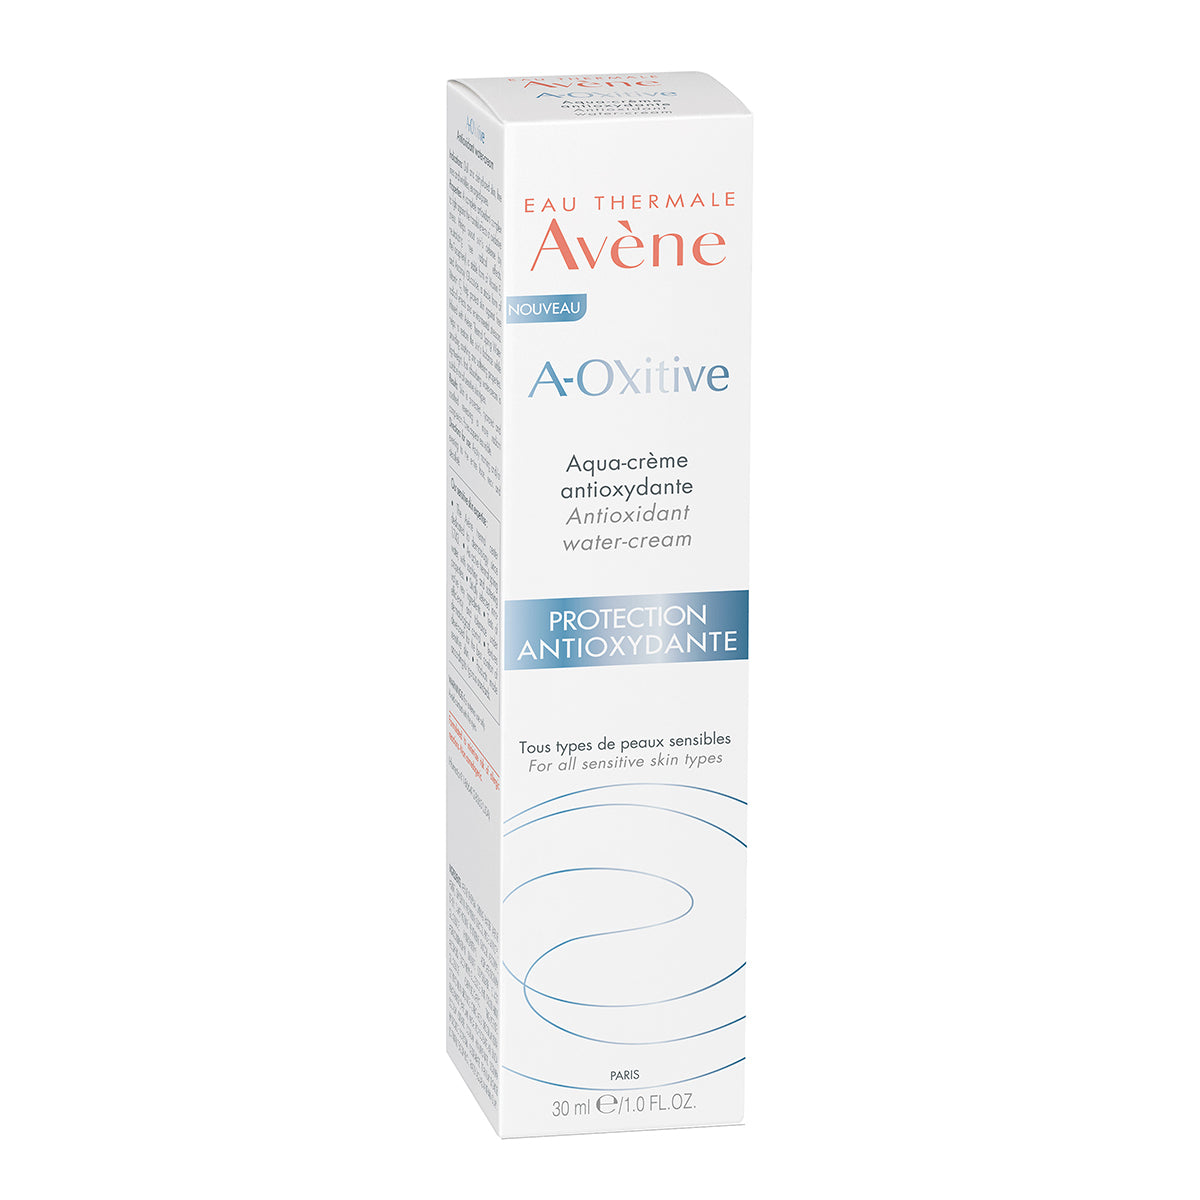 A-Oxitive Aqua crema, hidrata, suaviza y proporciona una barrera contra la contaminación sin renunciar al confort 30ml.